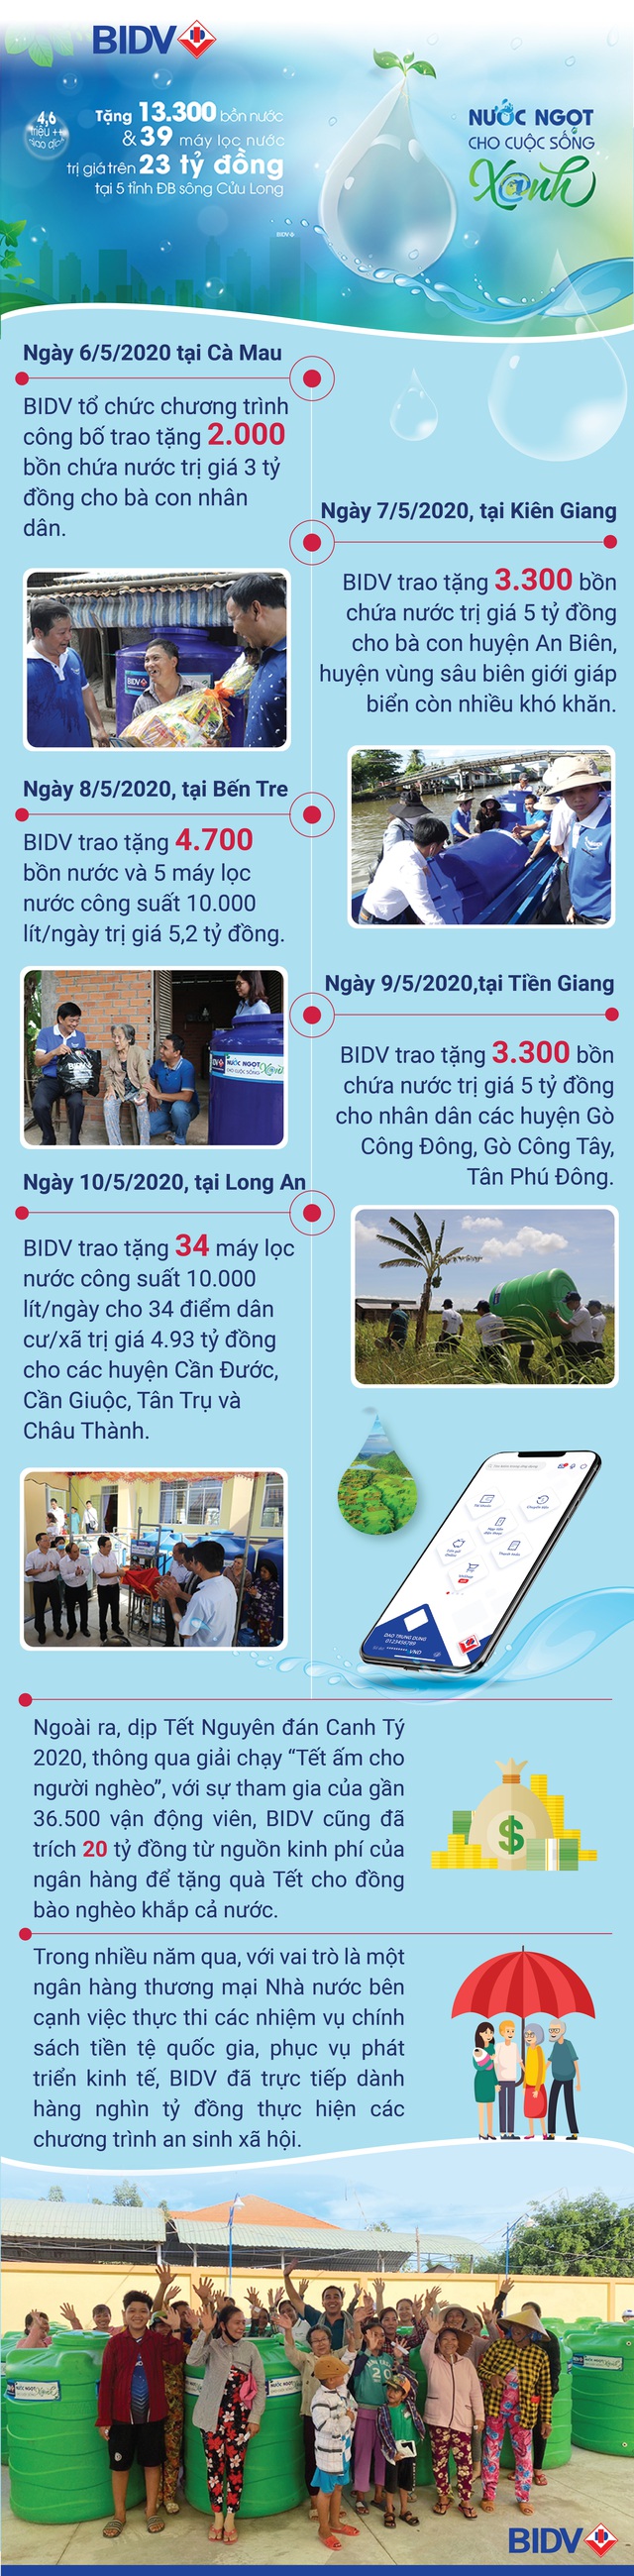 BIDV trao tặng 13.300 bồn chứa nước và 39 máy lọc nước ủng hộ đồng bào tại 5 tỉnh khu vực Đồng bằng sông Cửu Long - Ảnh 1.